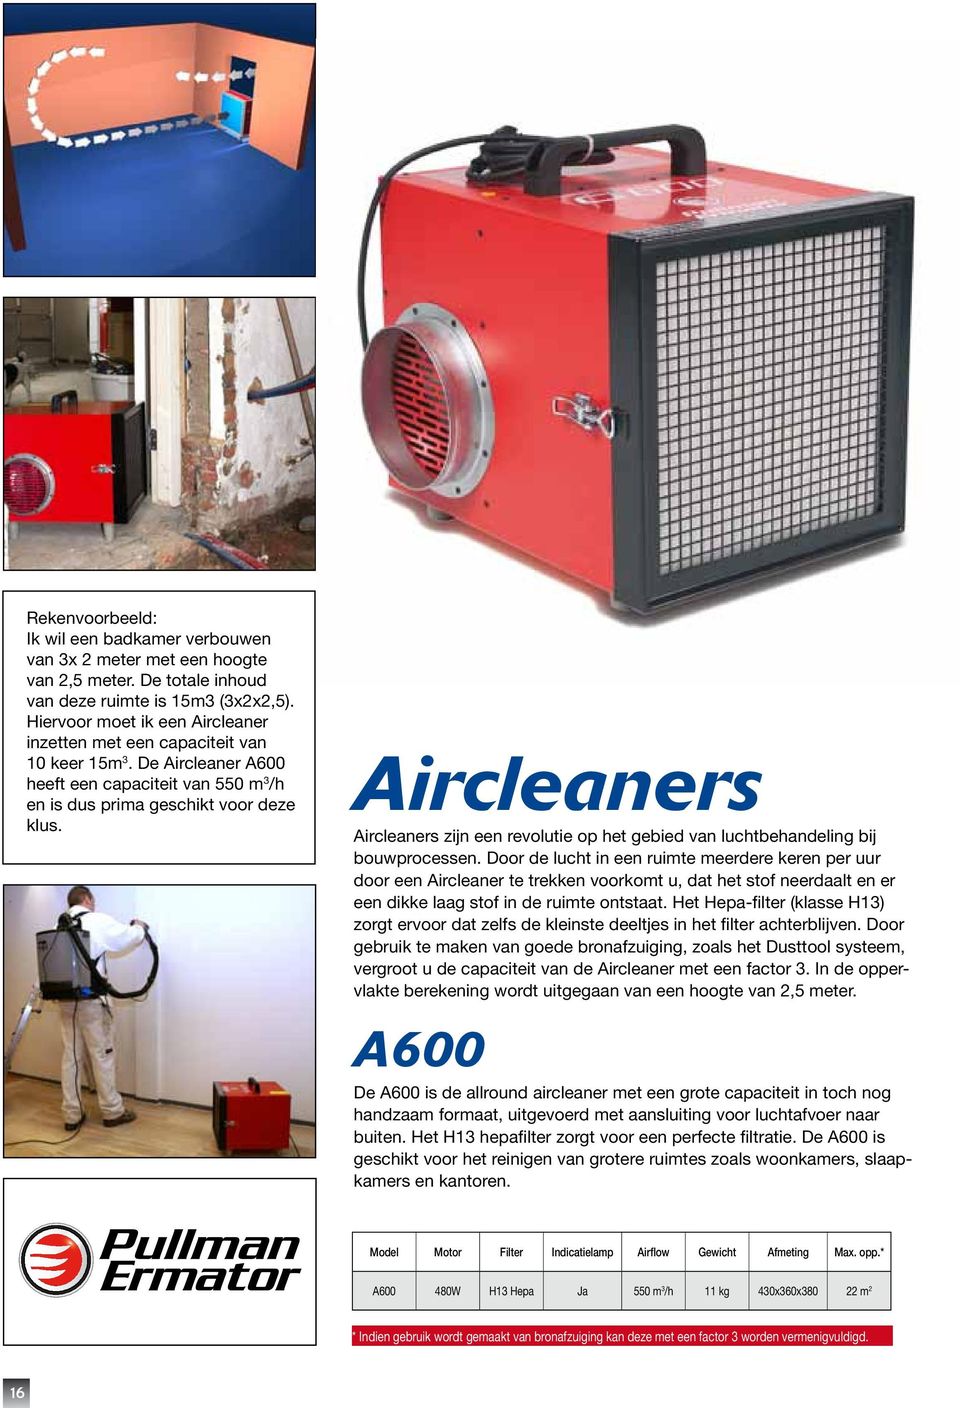 Aircleaners Aircleaners zijn een revolutie op het gebied van luchtbehandeling bij bouwprocessen.